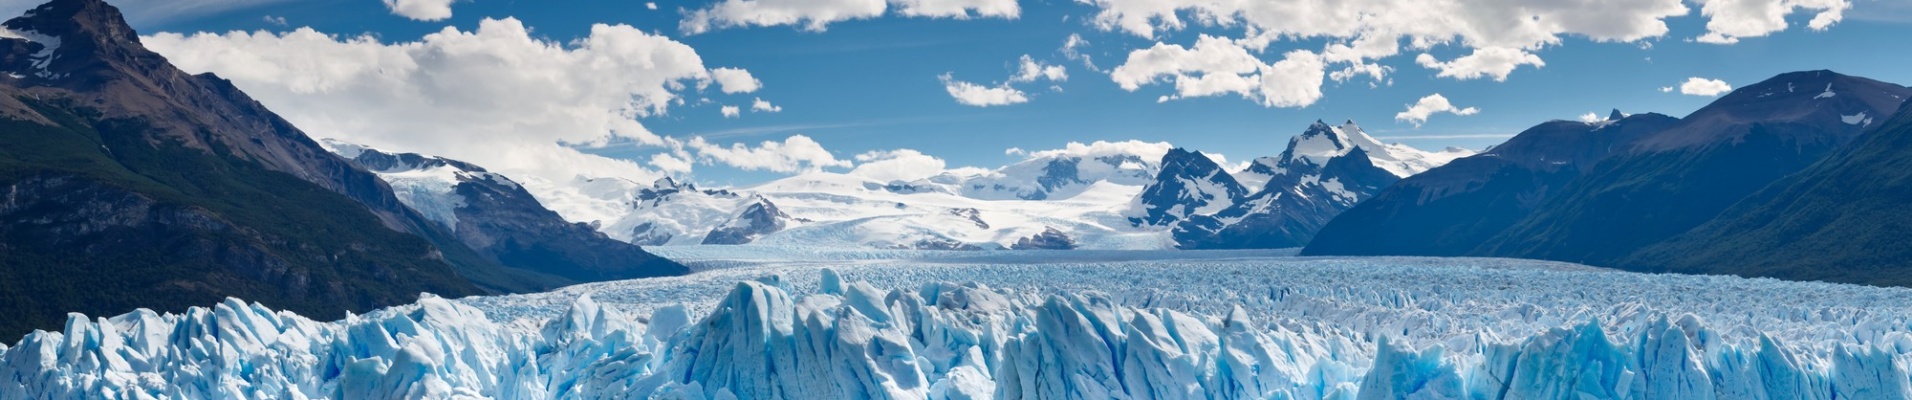 Glacier Perito Moreno, Patagonie, voyager en argentine